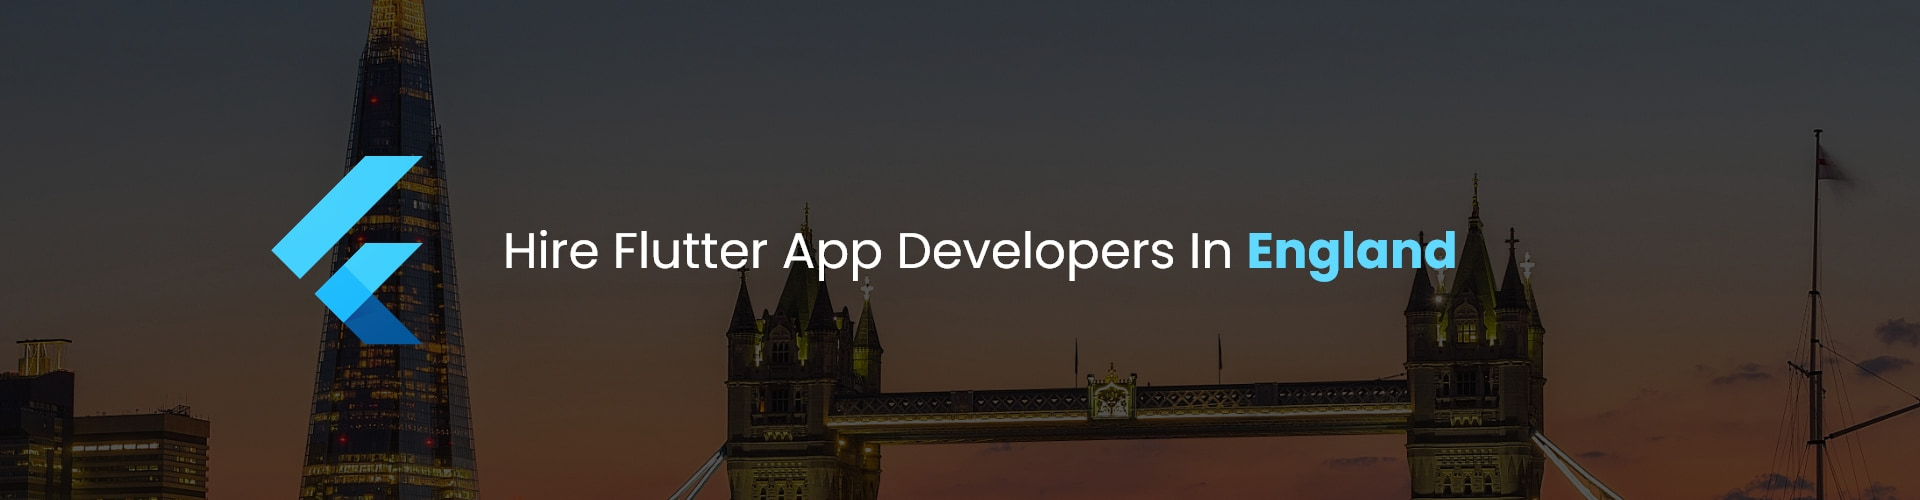 hire flutter app developers in england